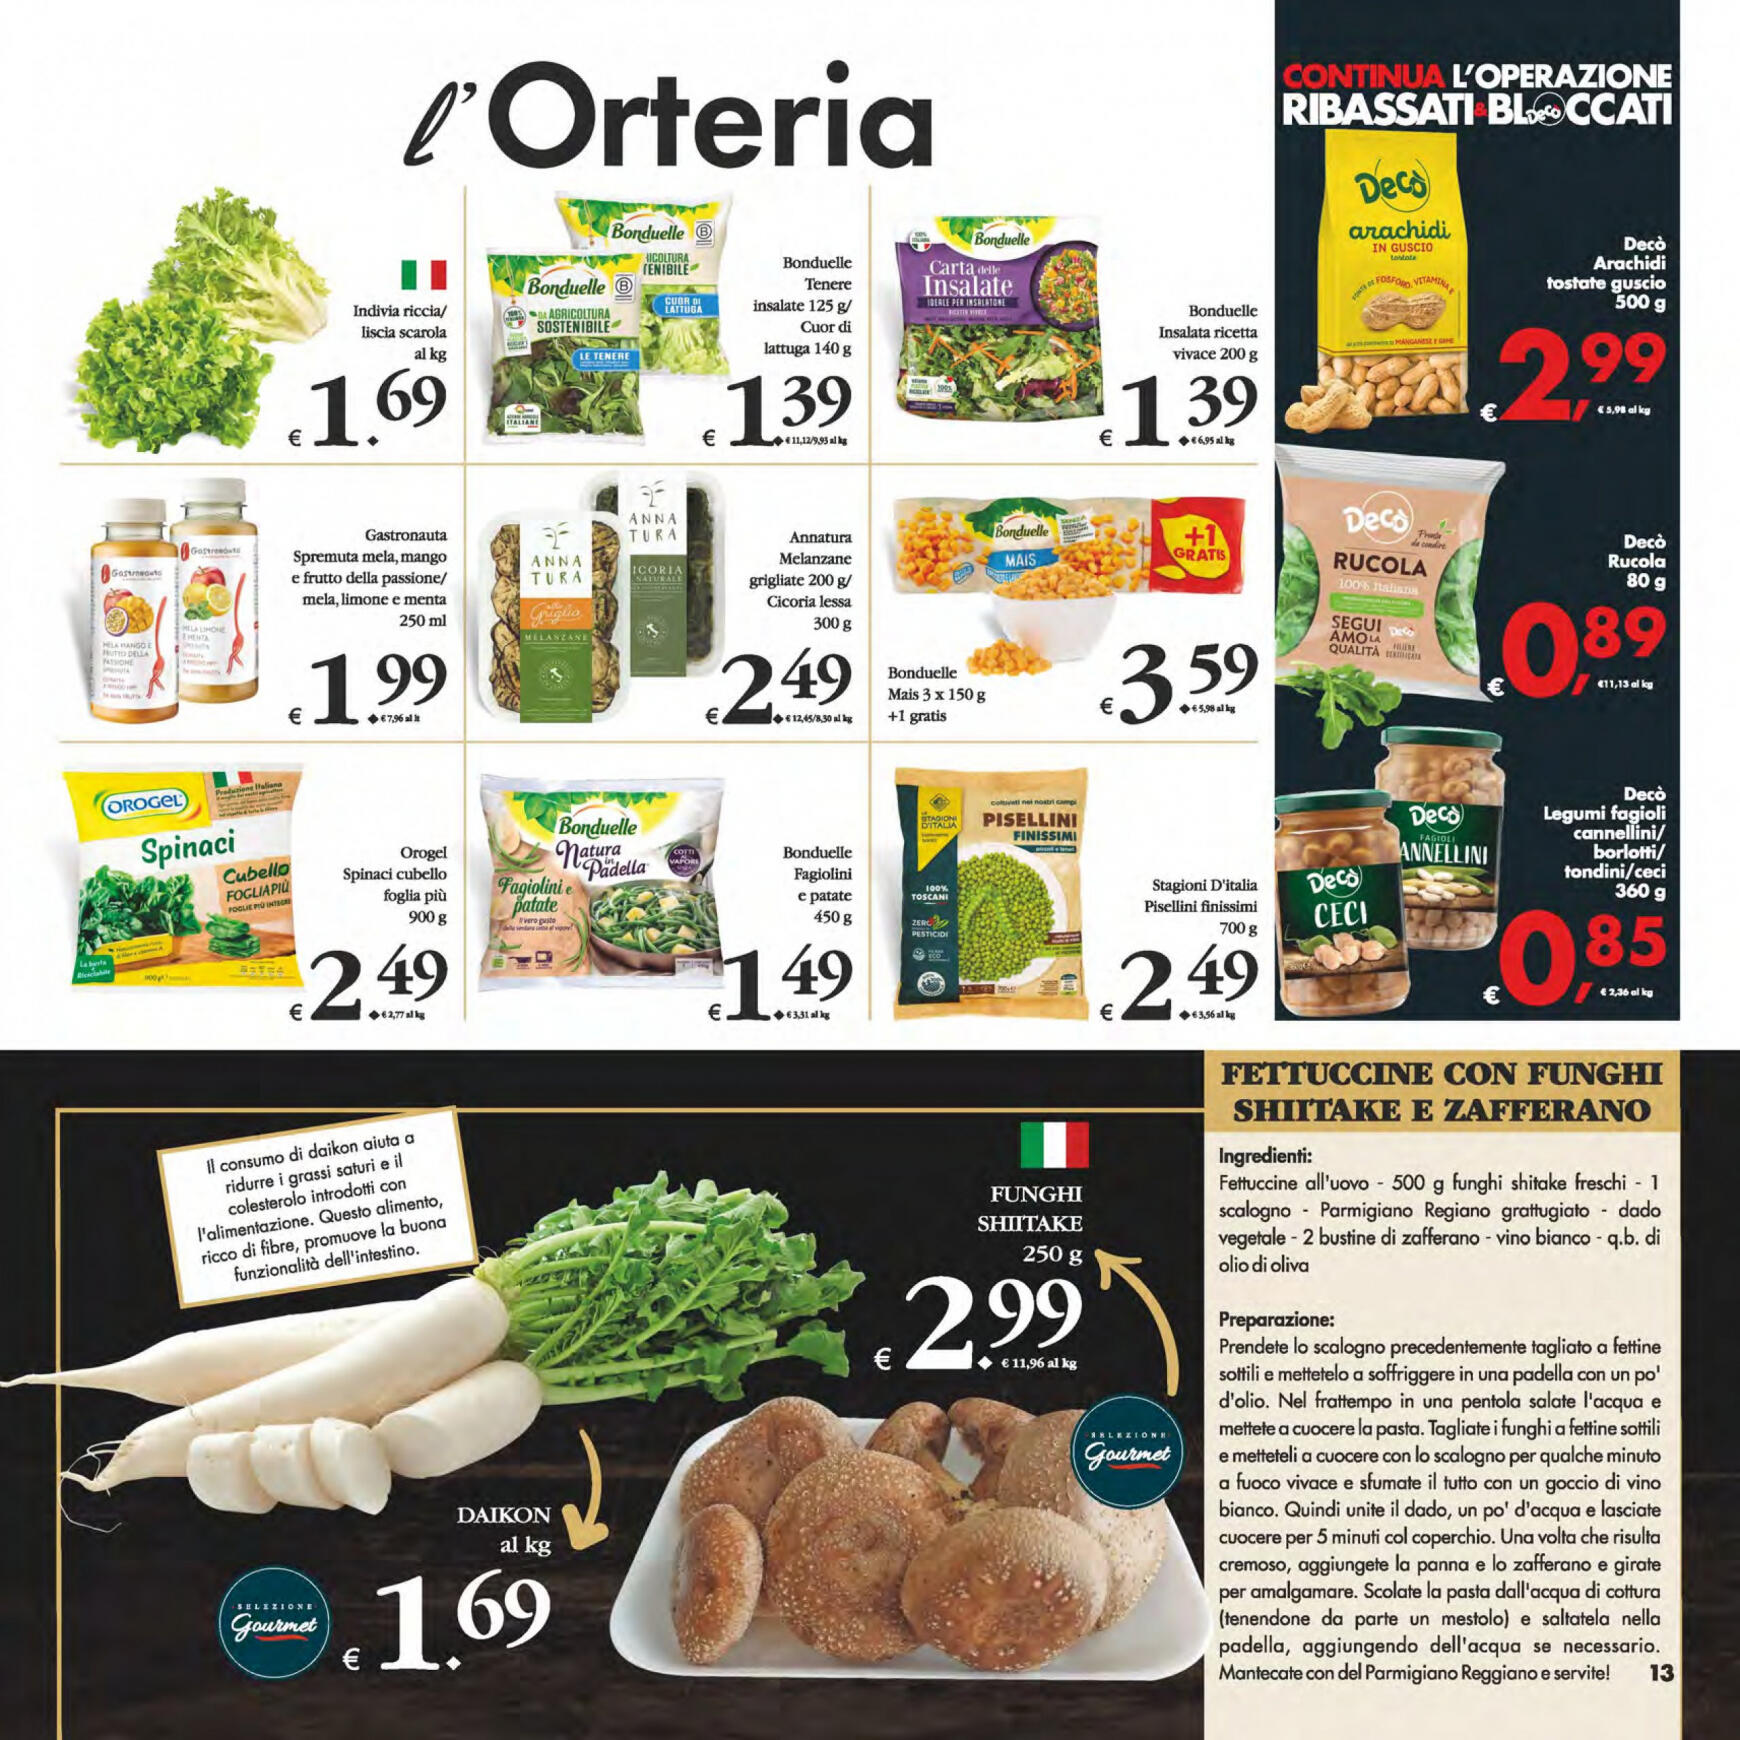 deco - Nuovo volantino Decò - Gourmet 14.05. - 23.05. - page: 13